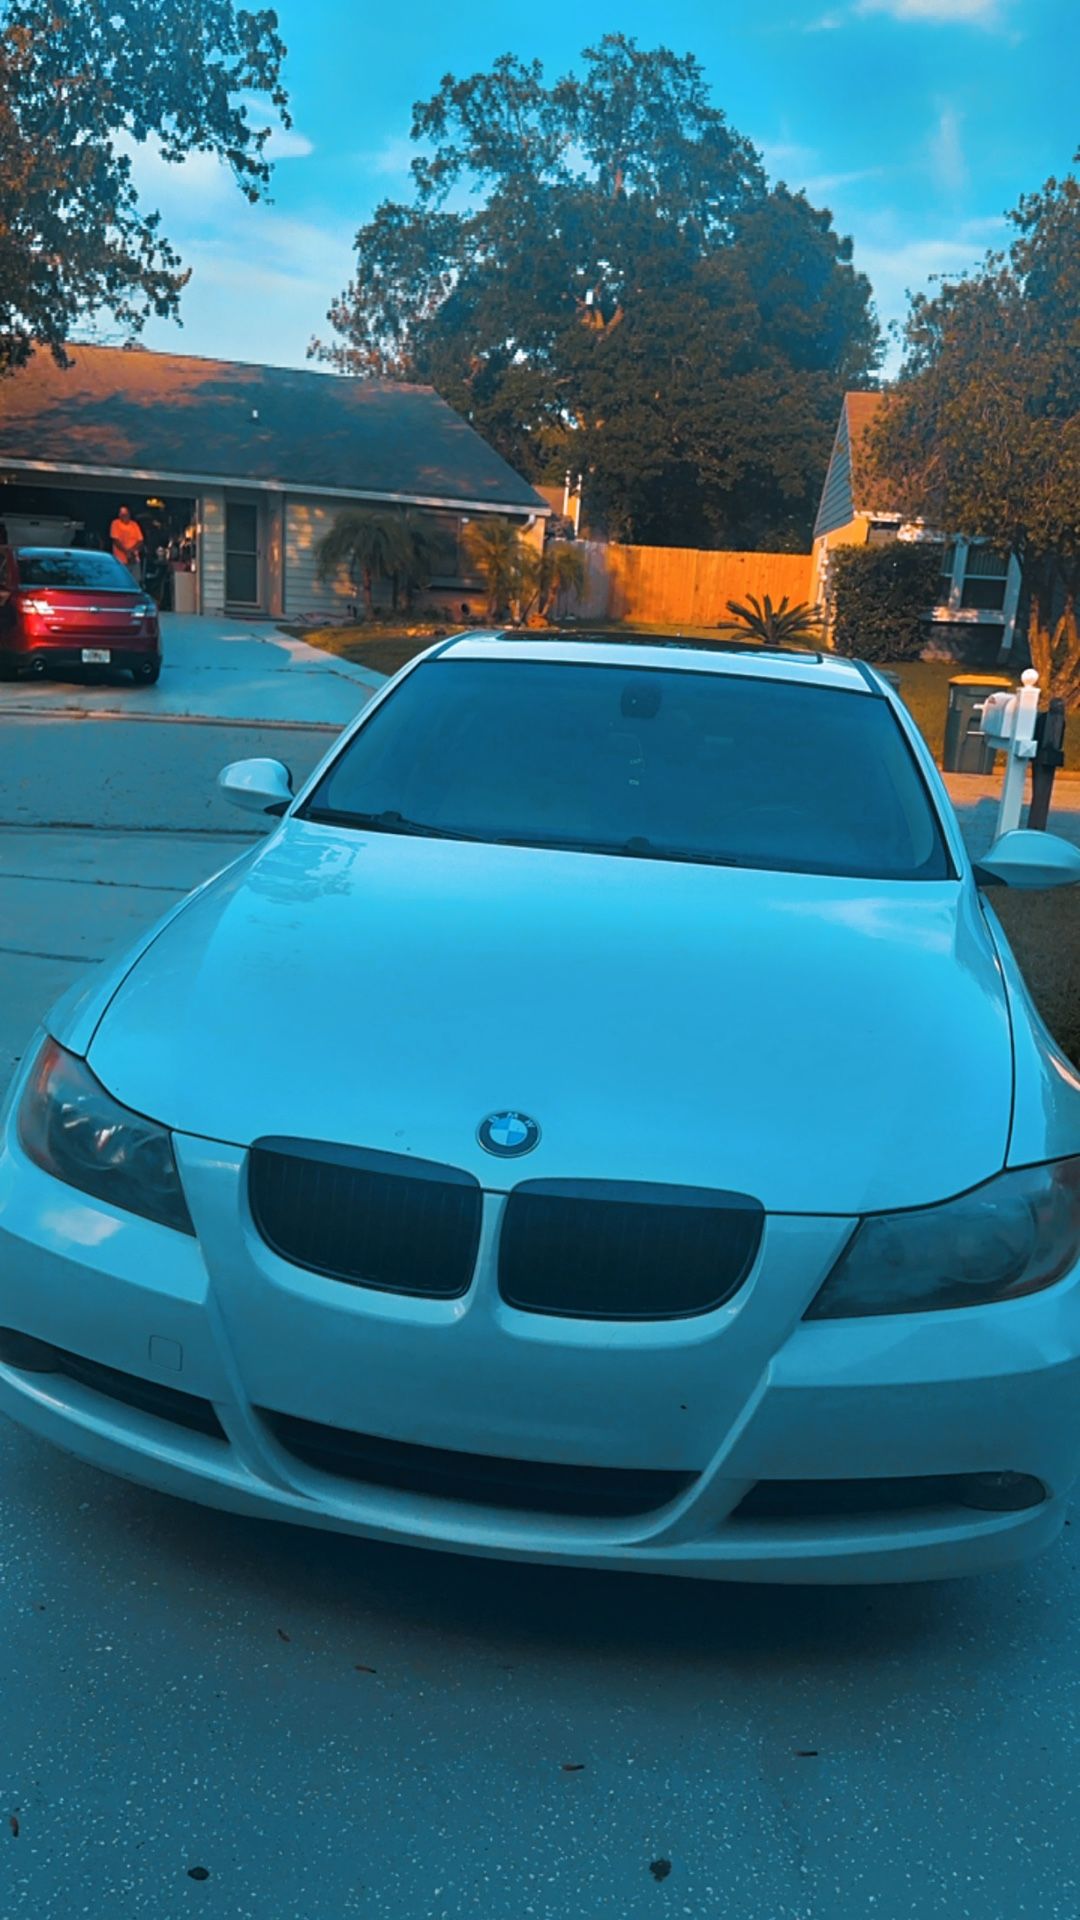 2007 BMW 335i